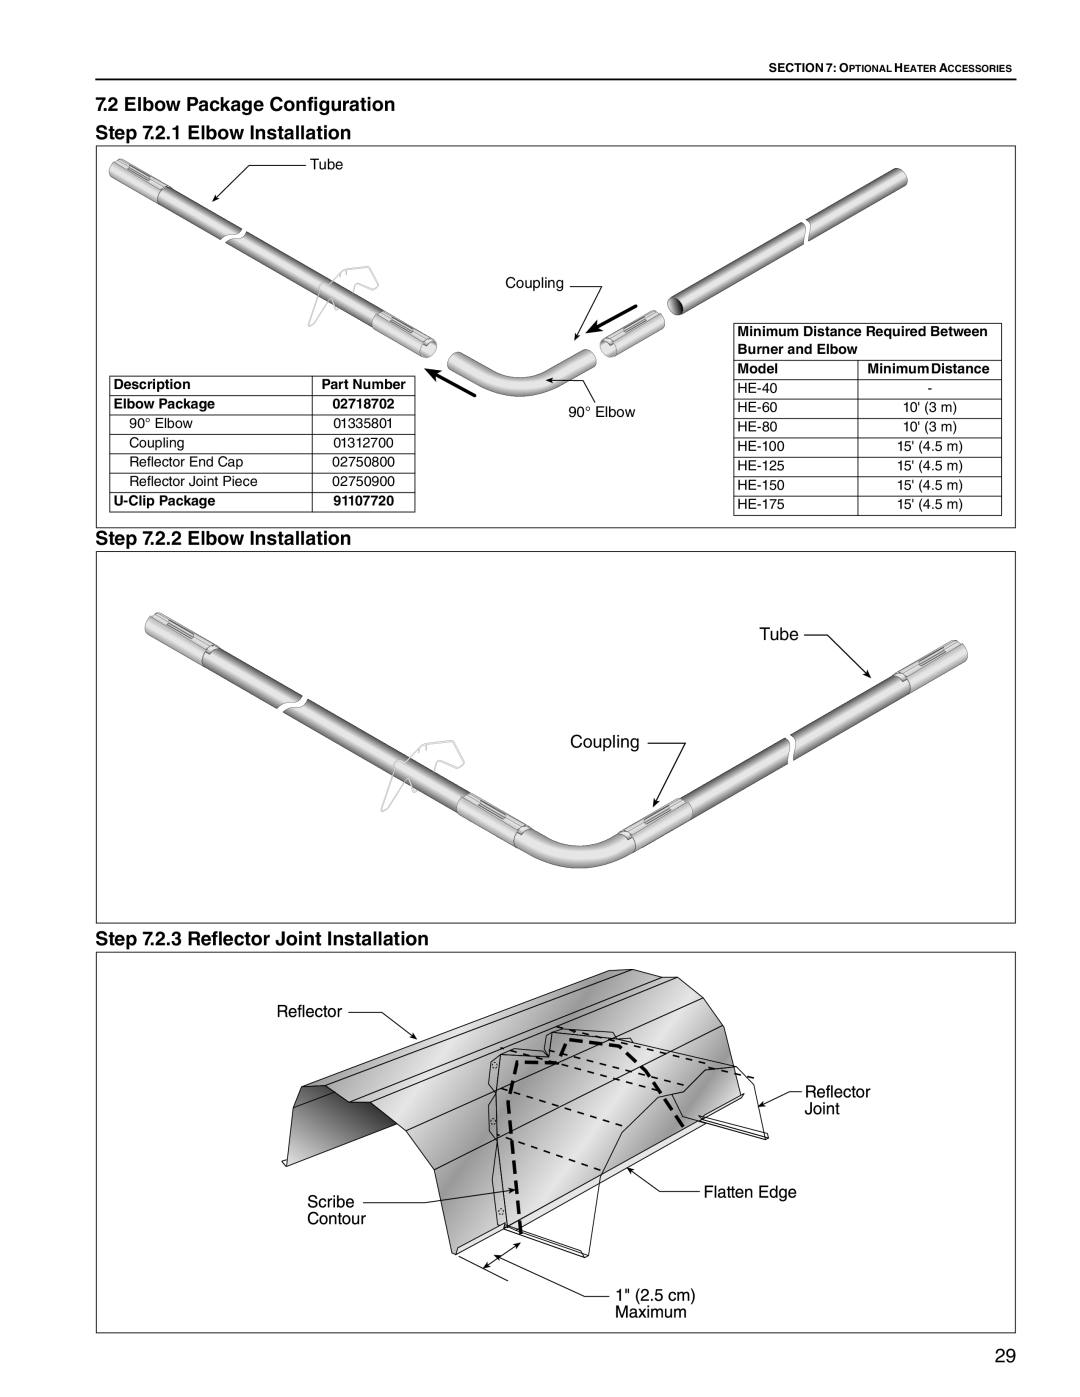 Roberts Gorden HE-60 Elbow Package Configuration .2.1 Elbow Installation, 2.2 Elbow Installation, Burner and Elbow, Model 